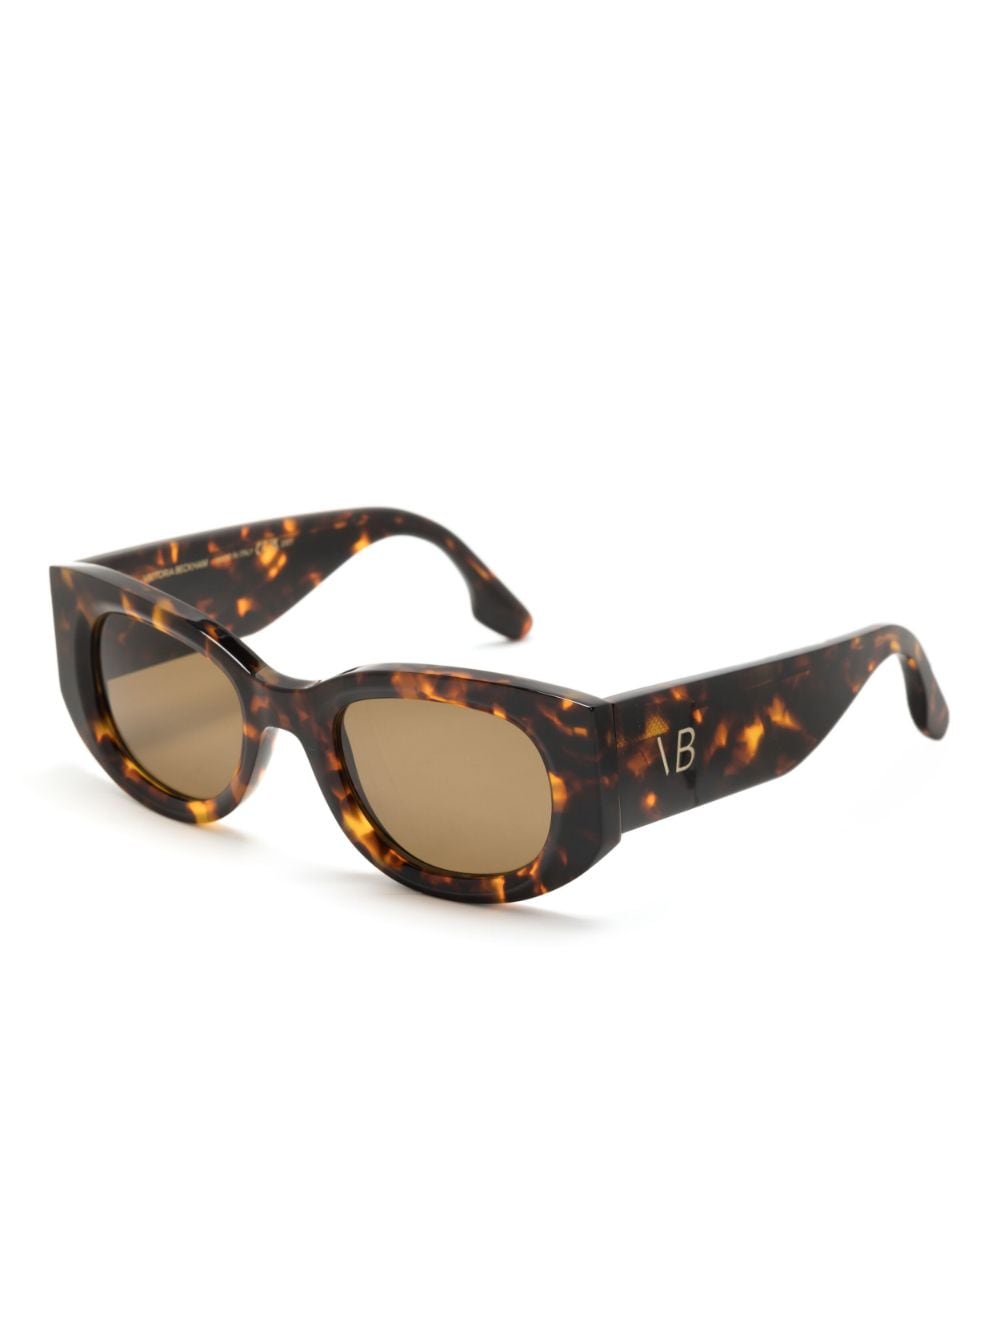 Victoria Beckham tortoiseshell-effect oval-frame sunglasses - Bruin